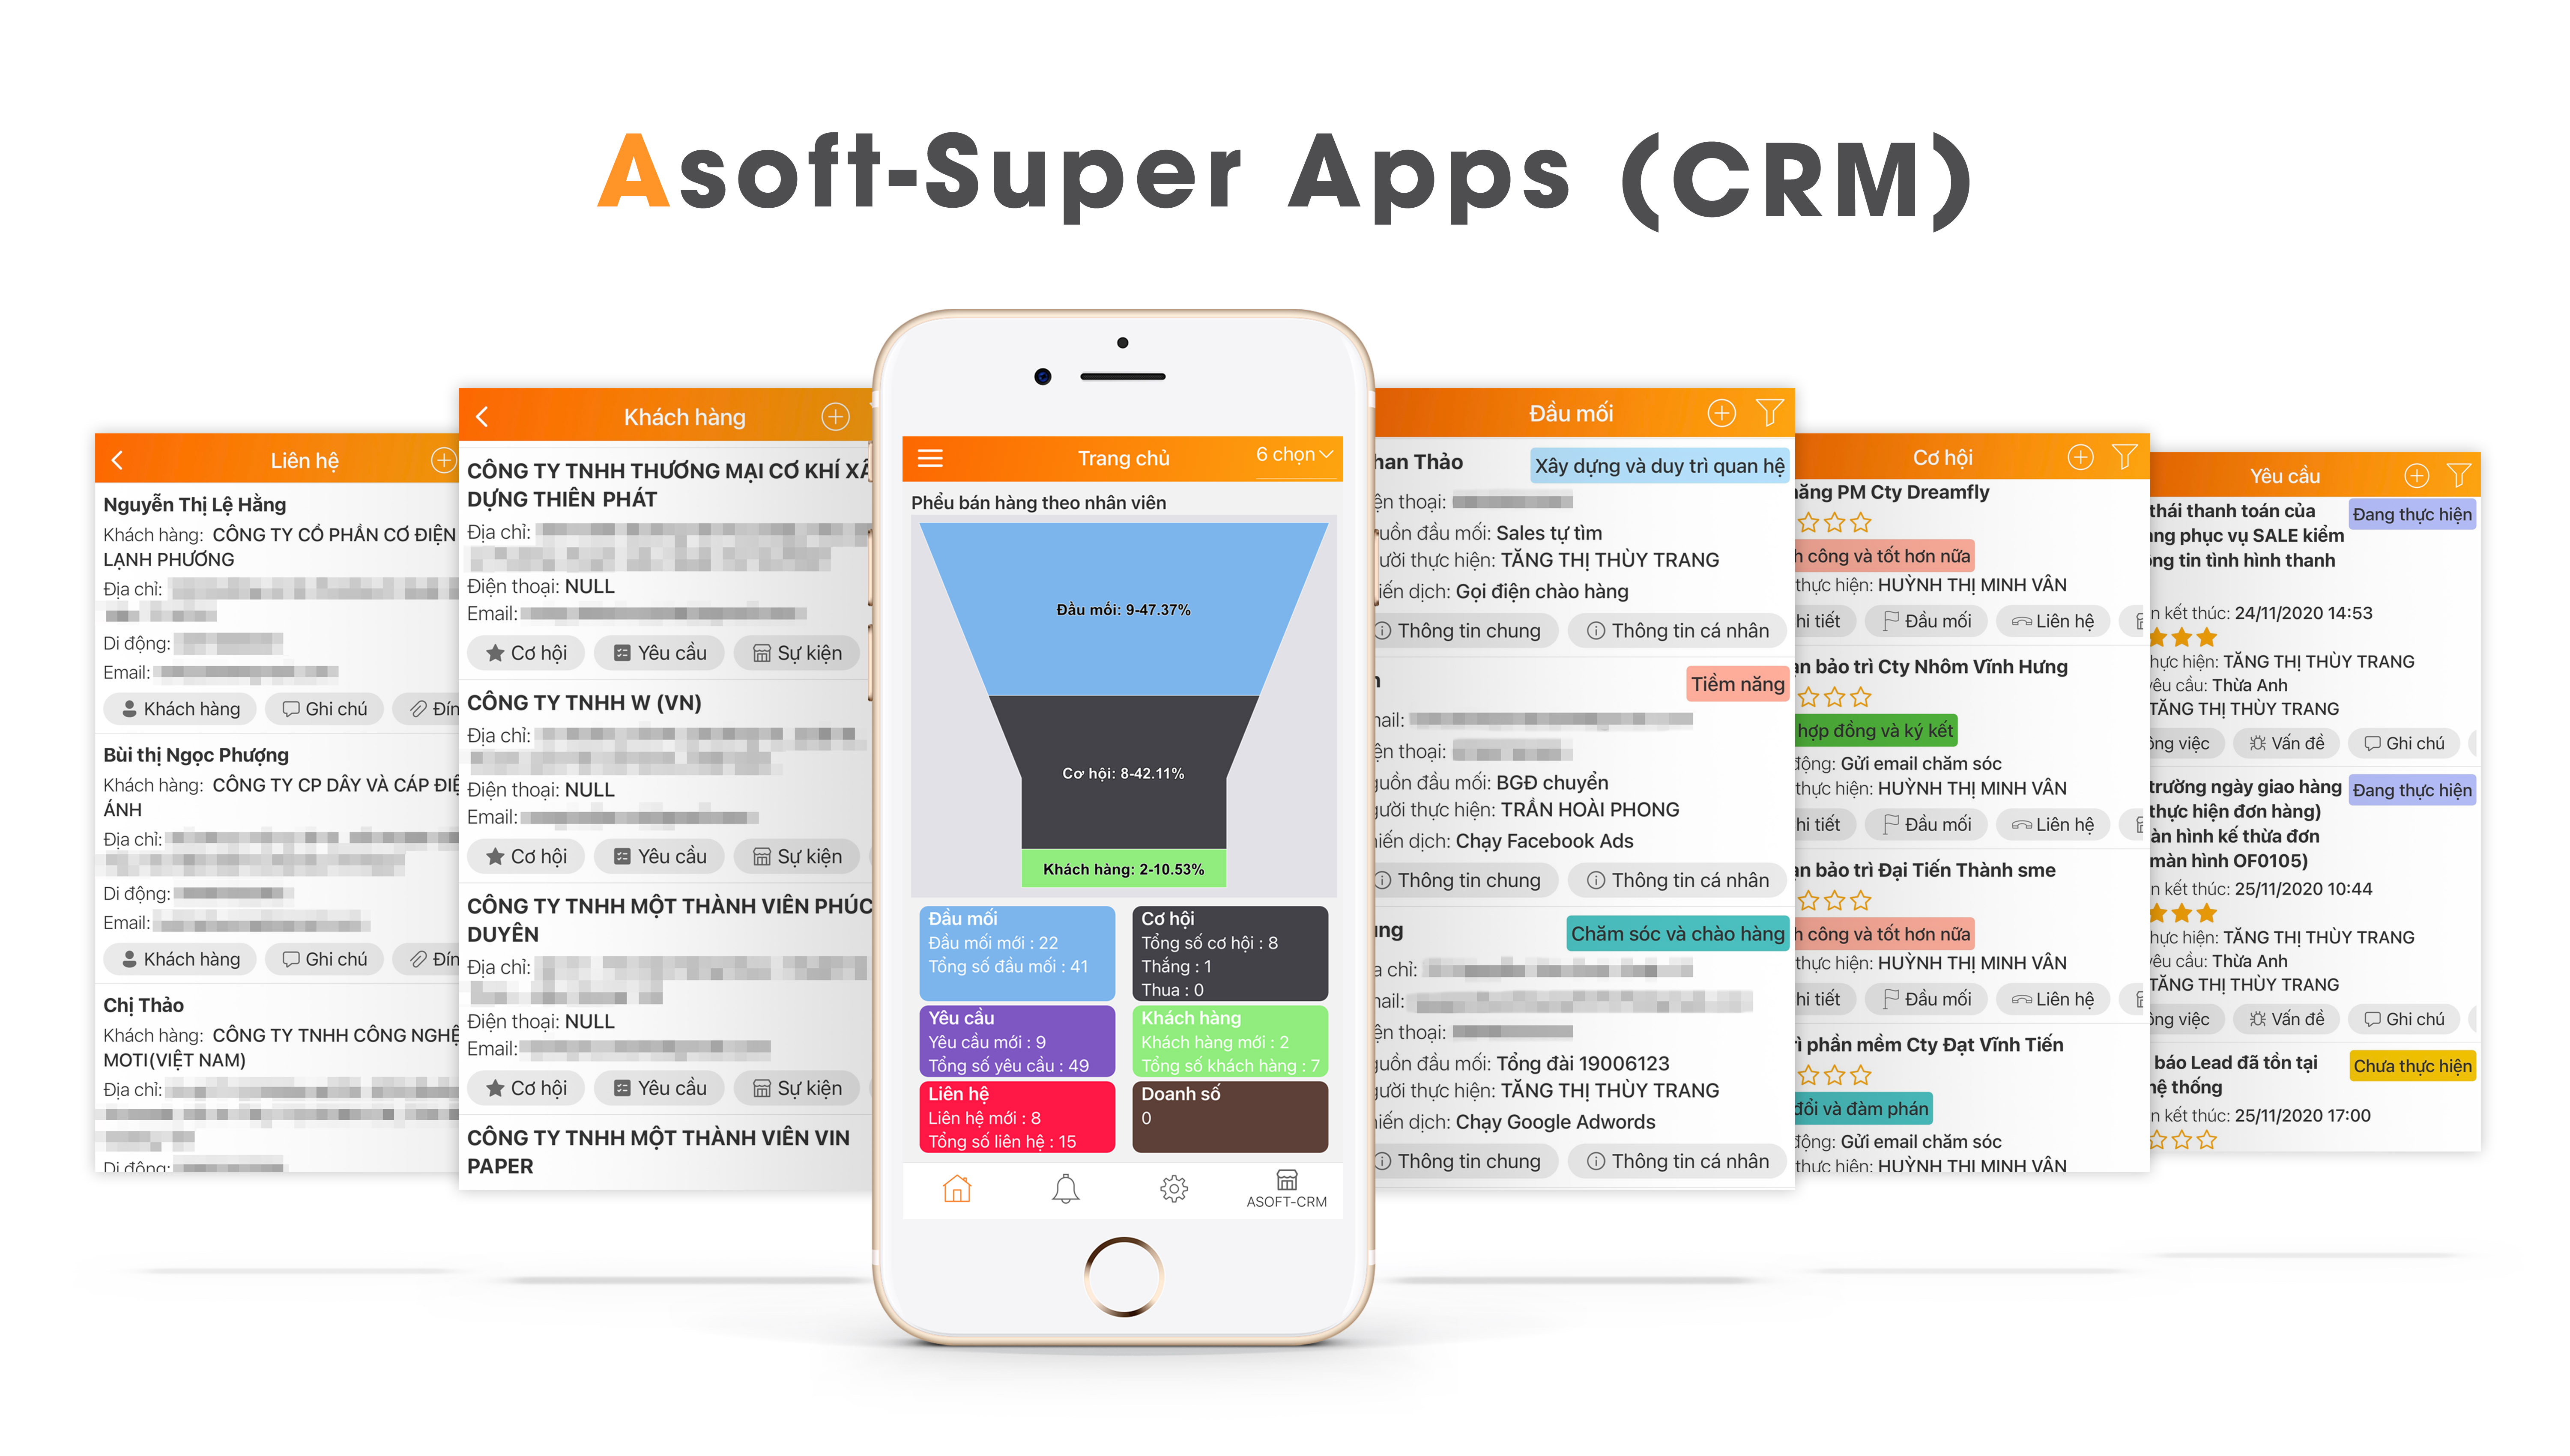  Mô hình ứng dụng micro service/API trên sản phẩm ASOFT 